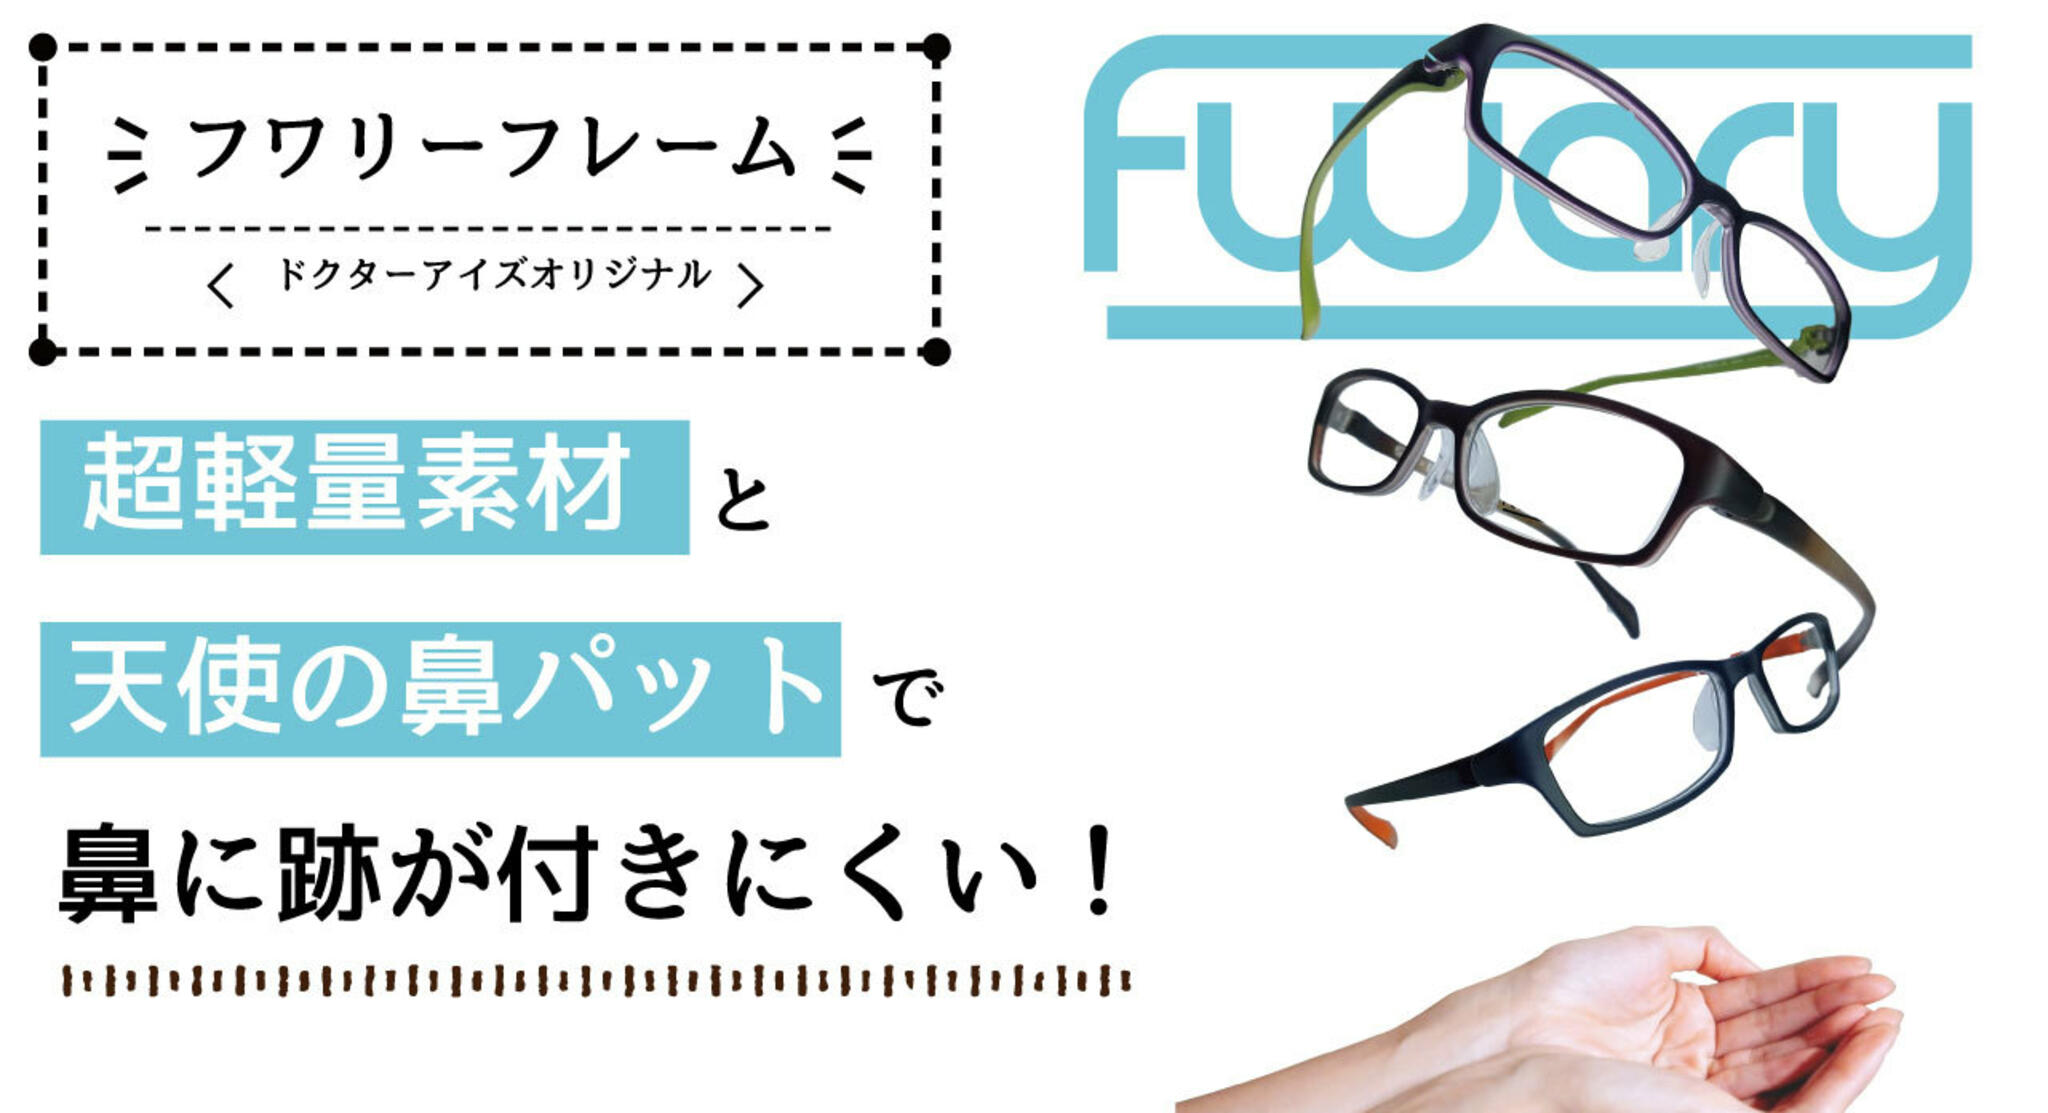 ドクターアイズ江別店からのお知らせ(人気の快適メガネ『フワリーフレーム』)に関する写真